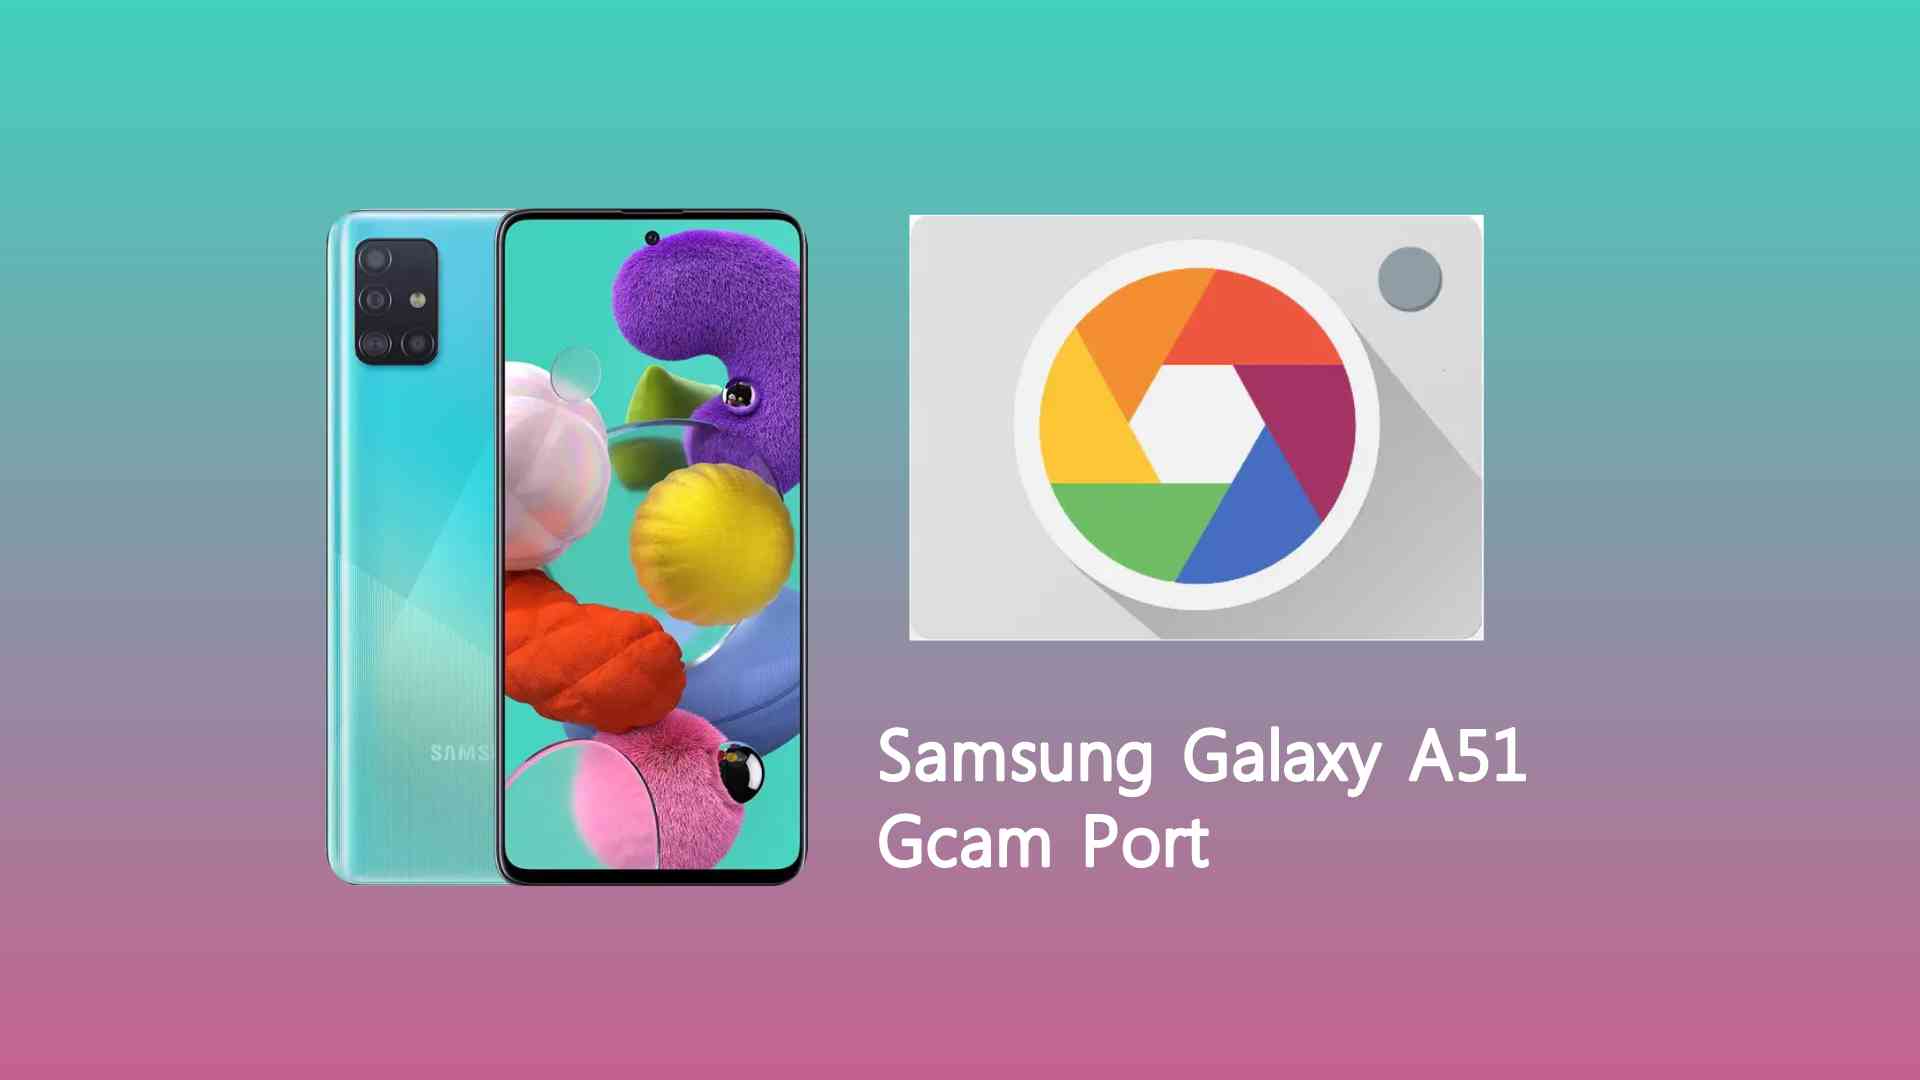 Samsung Galaxy A51 Gcam Port